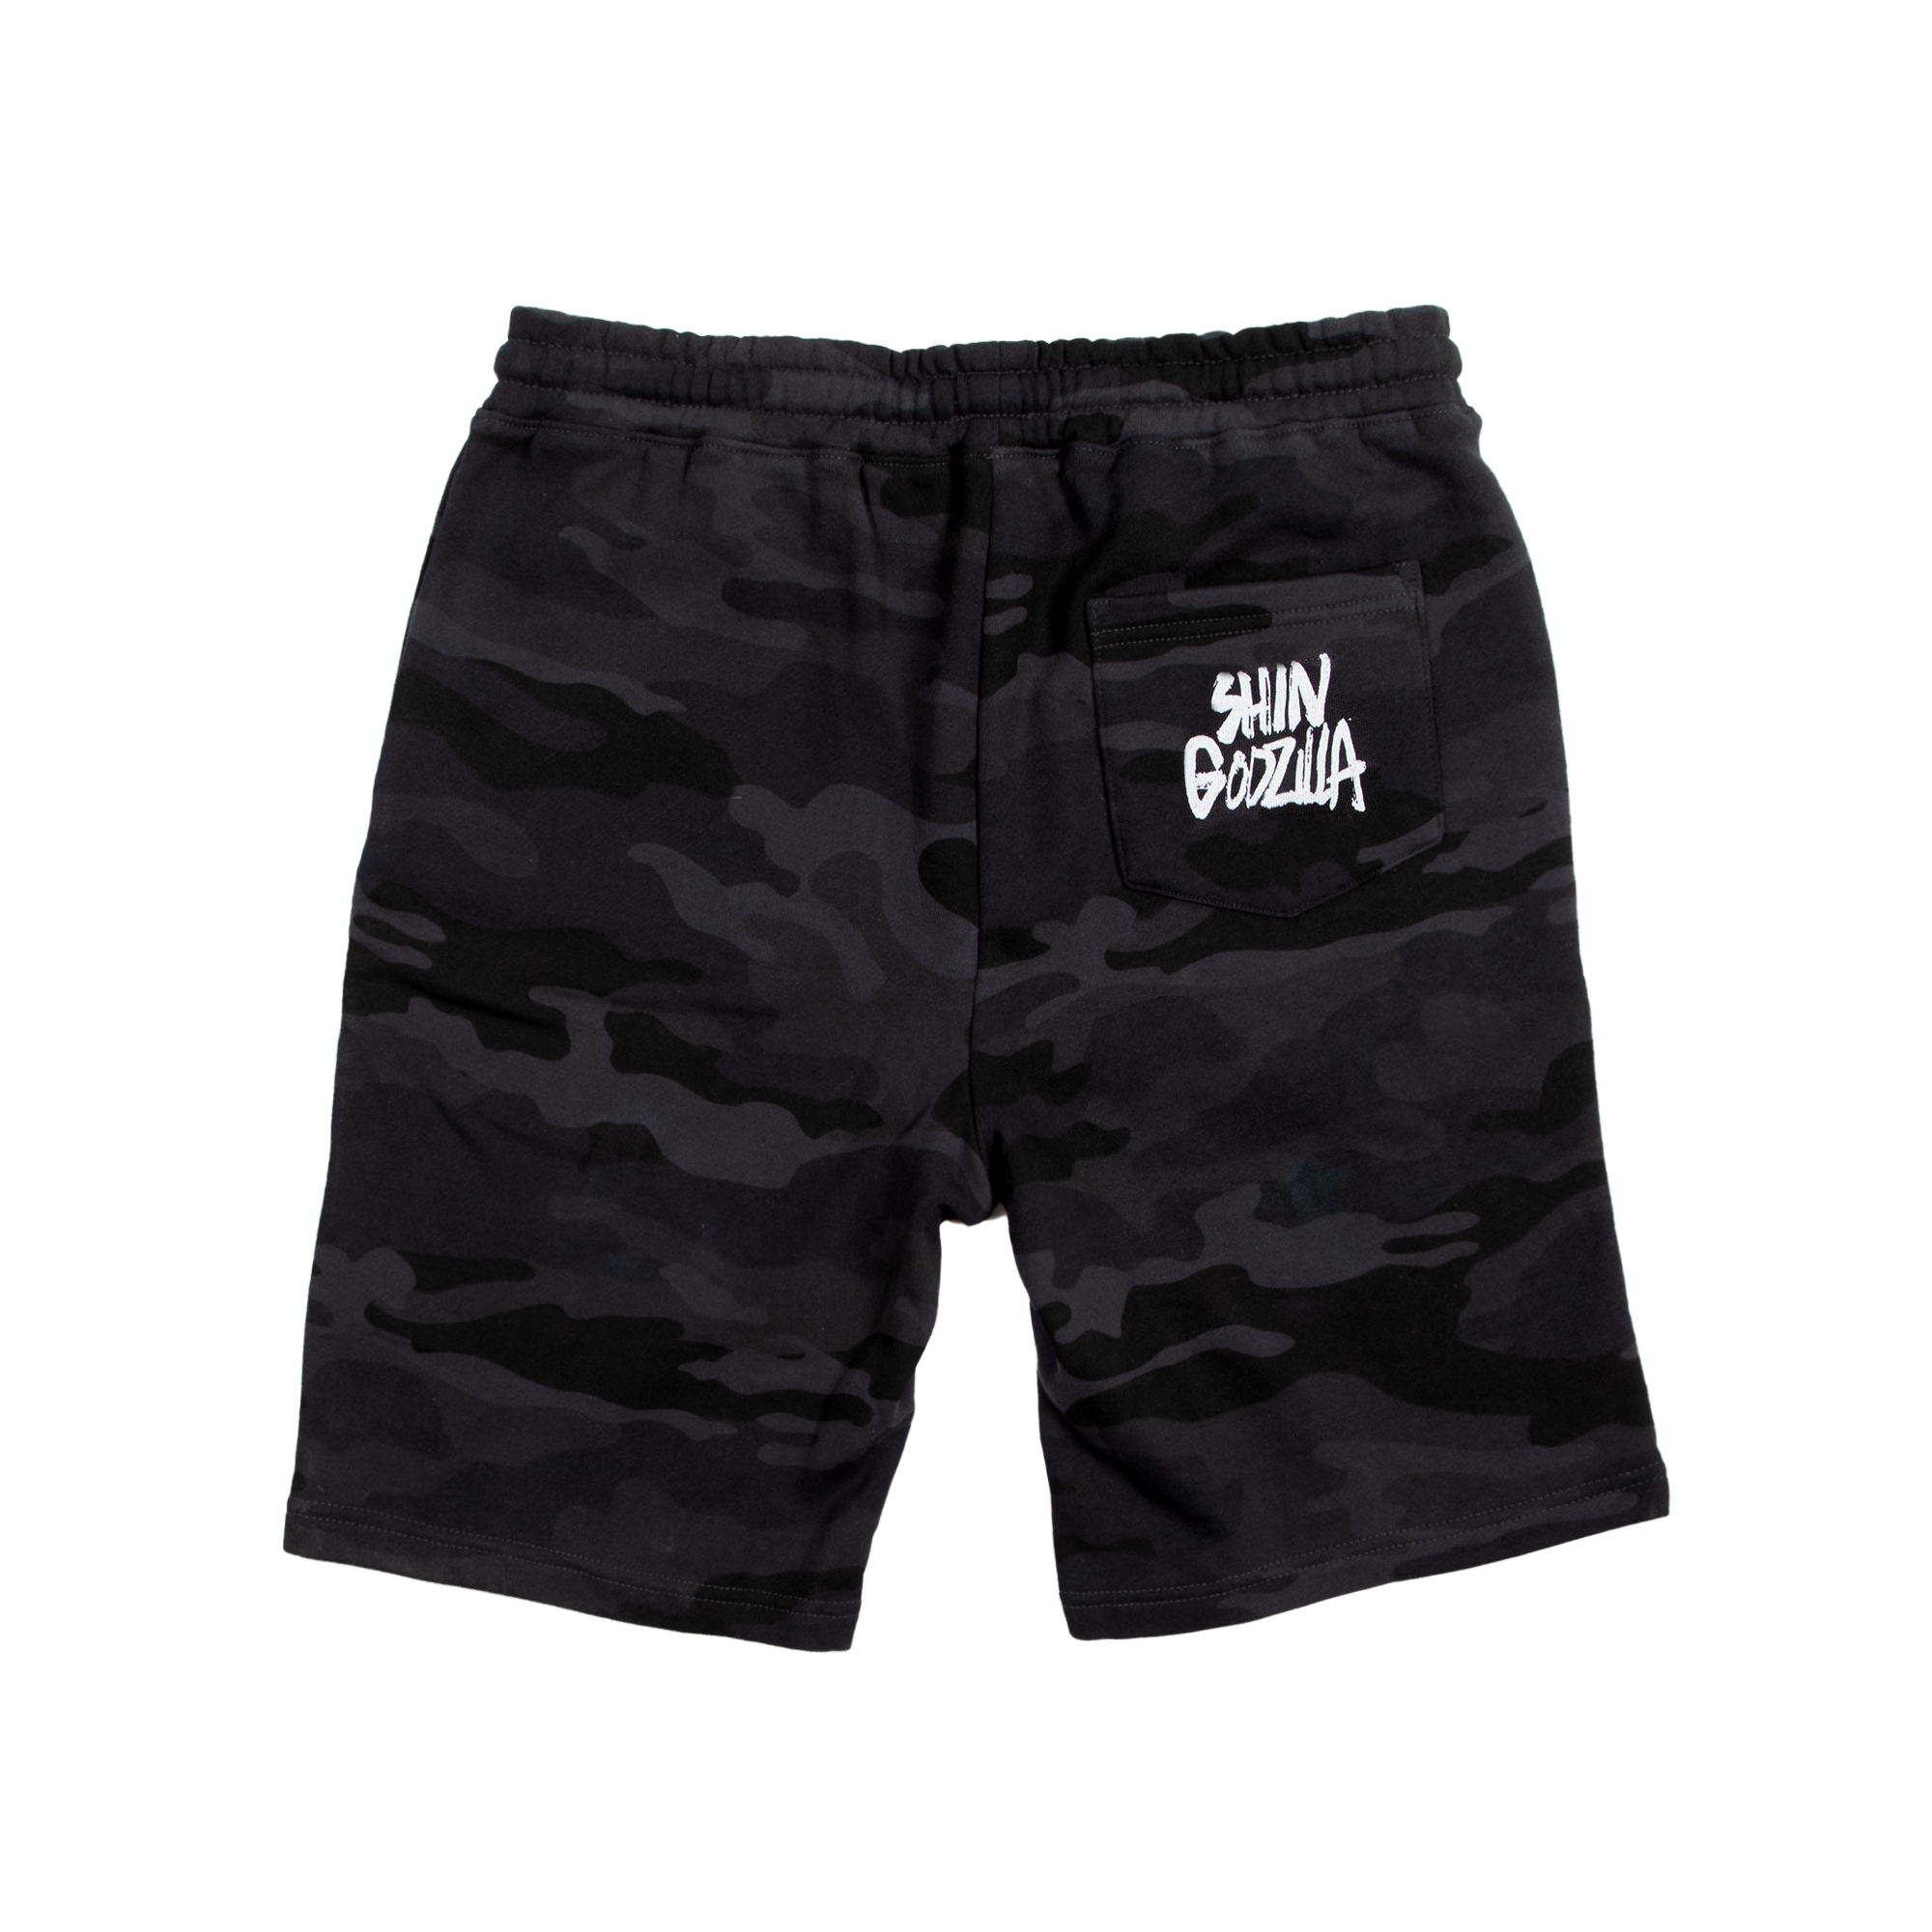 Shin Godzilla Charcoal Camo Shorts